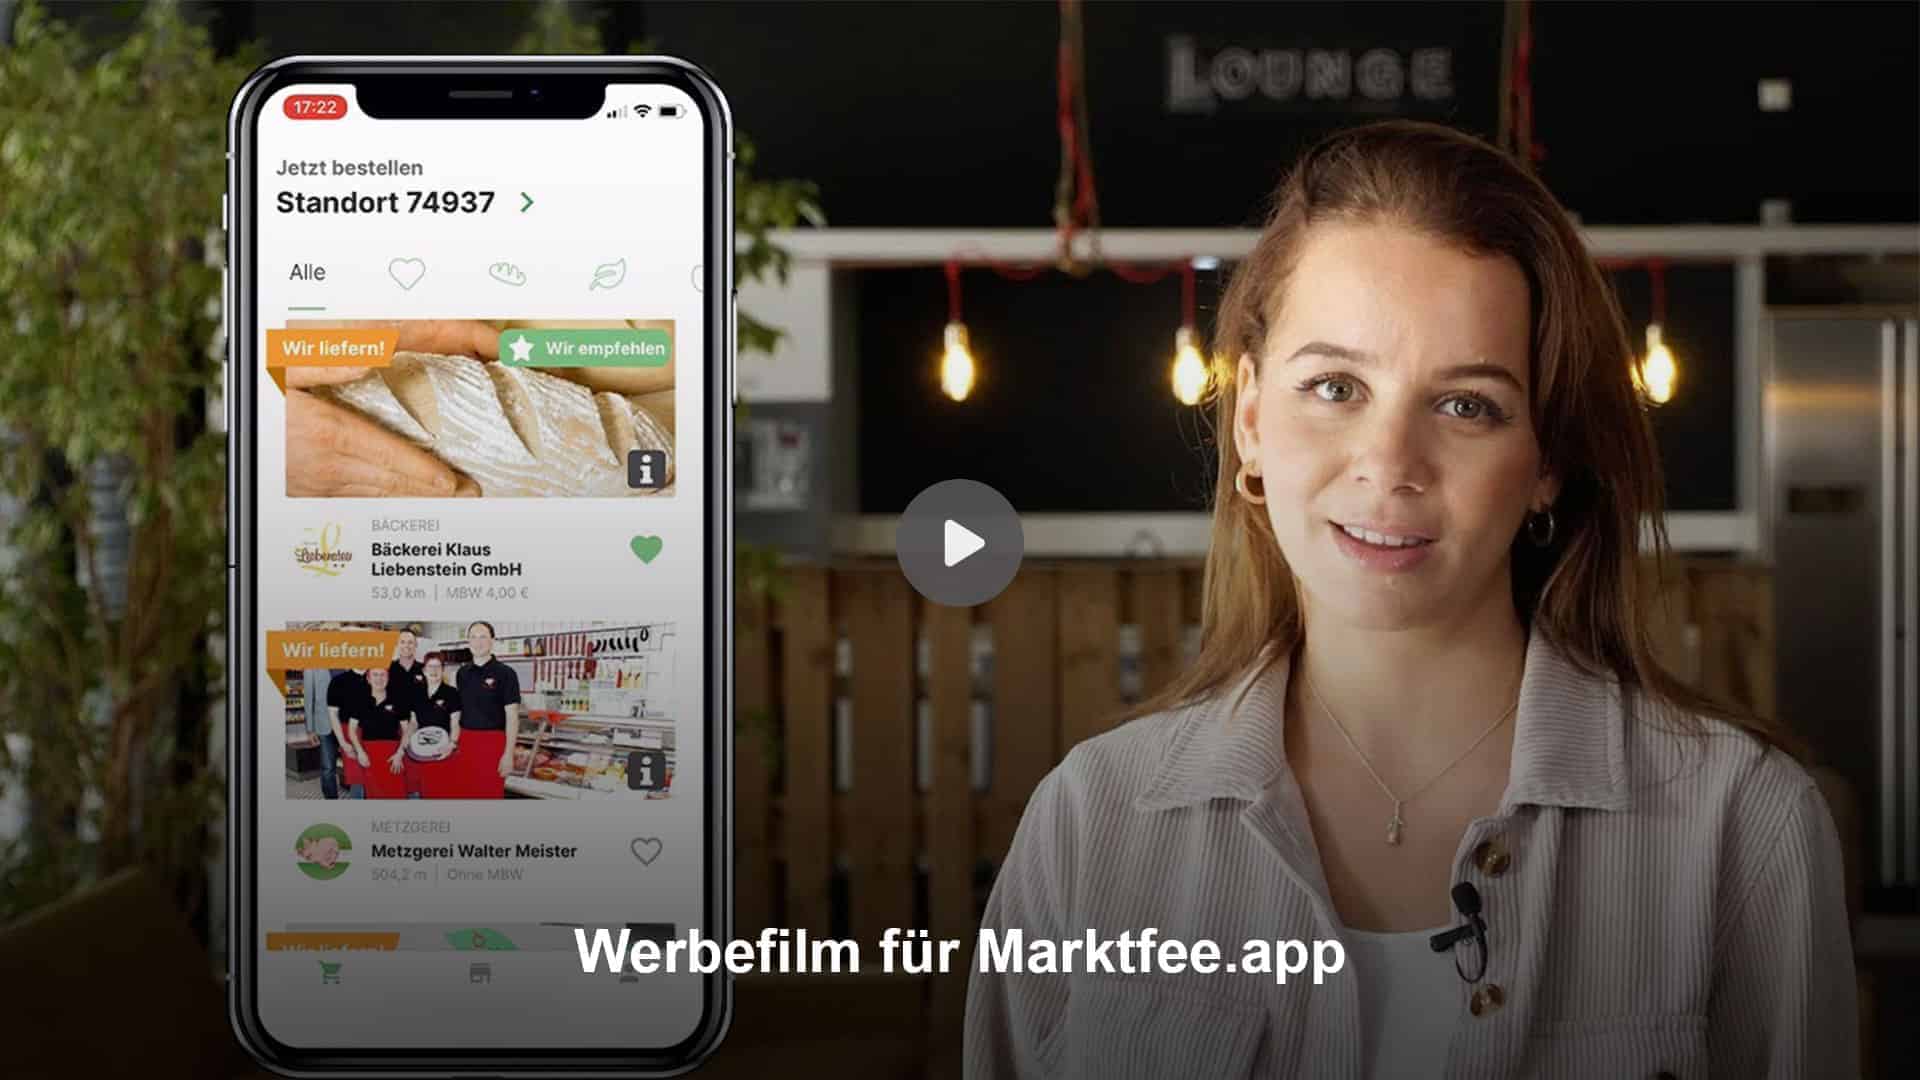 Marktfee.app Werbefilm